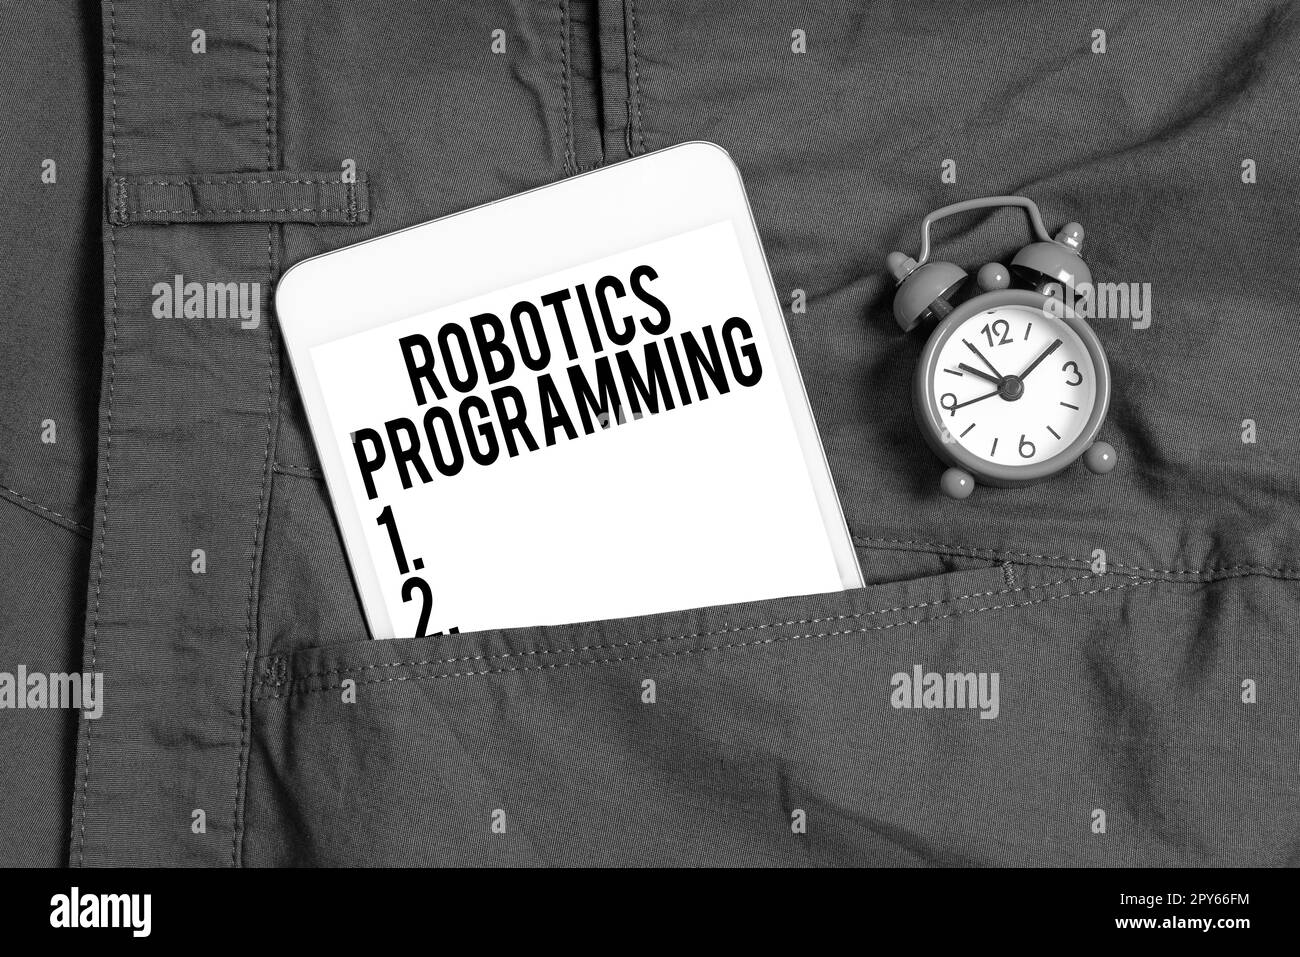 Konzeptionelle Beschriftung Robotik-Programmierung. Konzept bedeutet Software, die zur Ausführung autonomer Aufgaben verwendet wurde Stockfoto